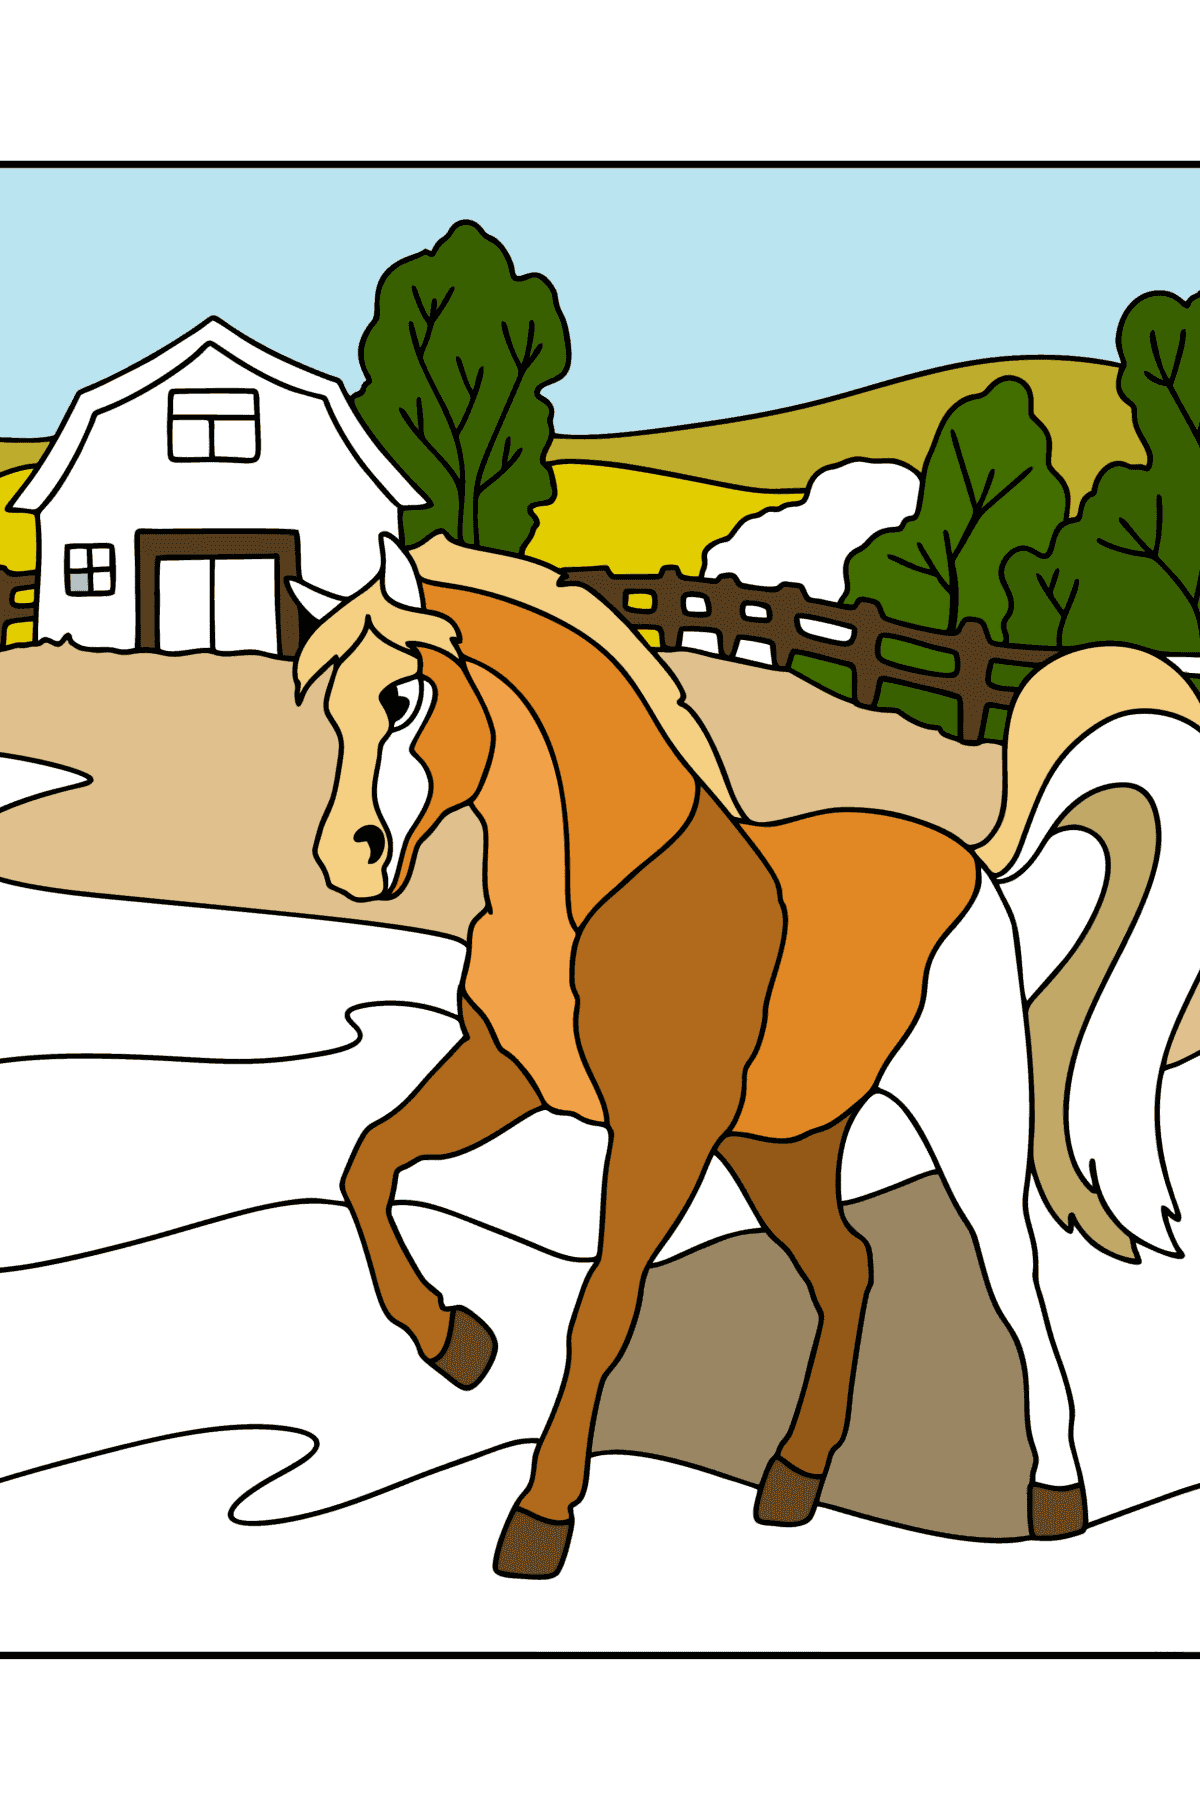 Målarbild Häst på gården - Målarbilder För barn